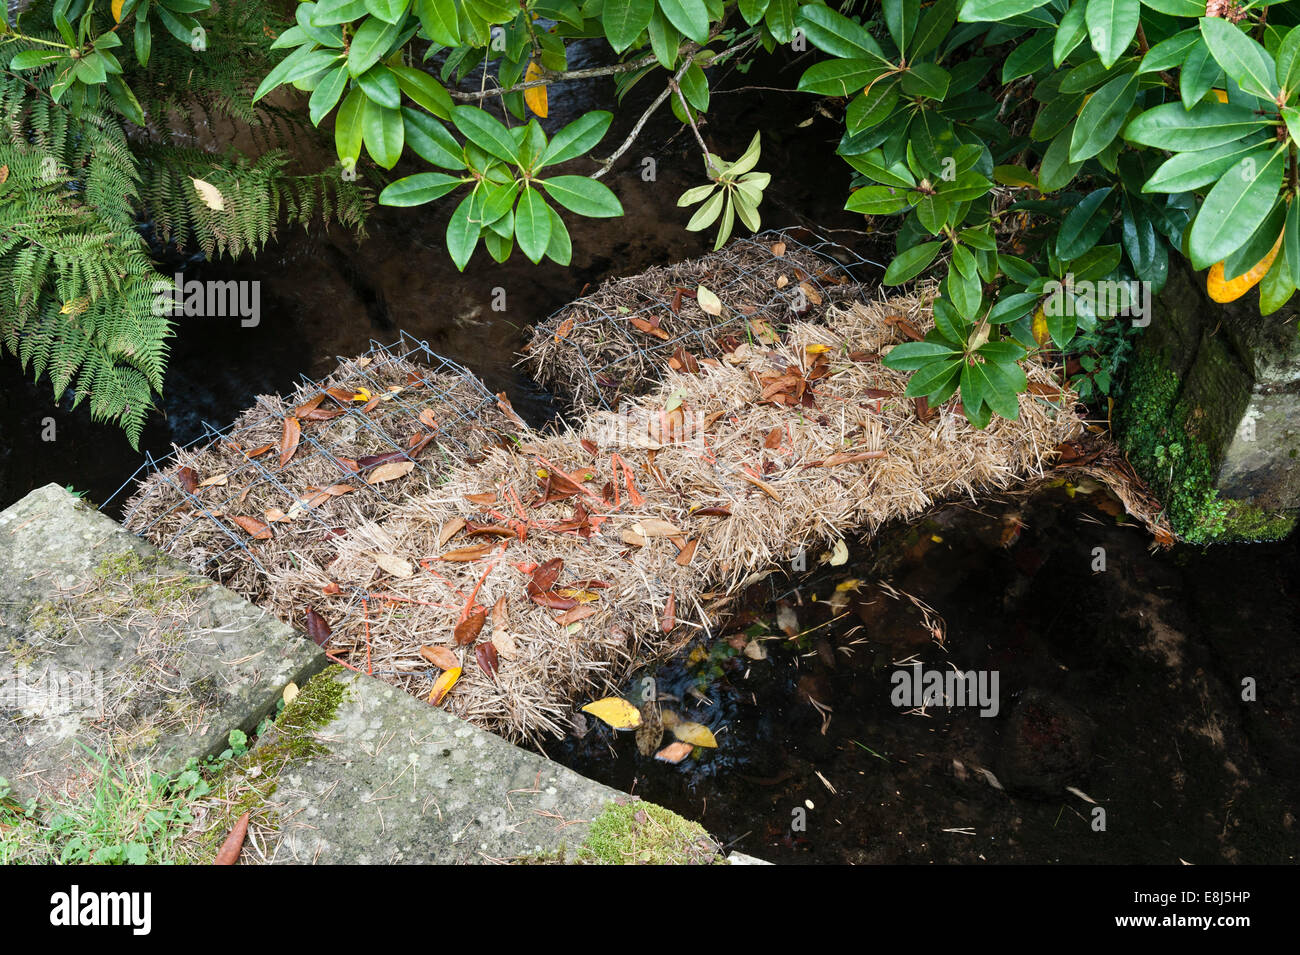 Balles de paille d'orge utilisées dans un ruisseau pour clarifier un étang de jardin - la paille produit du peroxyde qui contrôle la croissance des algues (UK) Banque D'Images